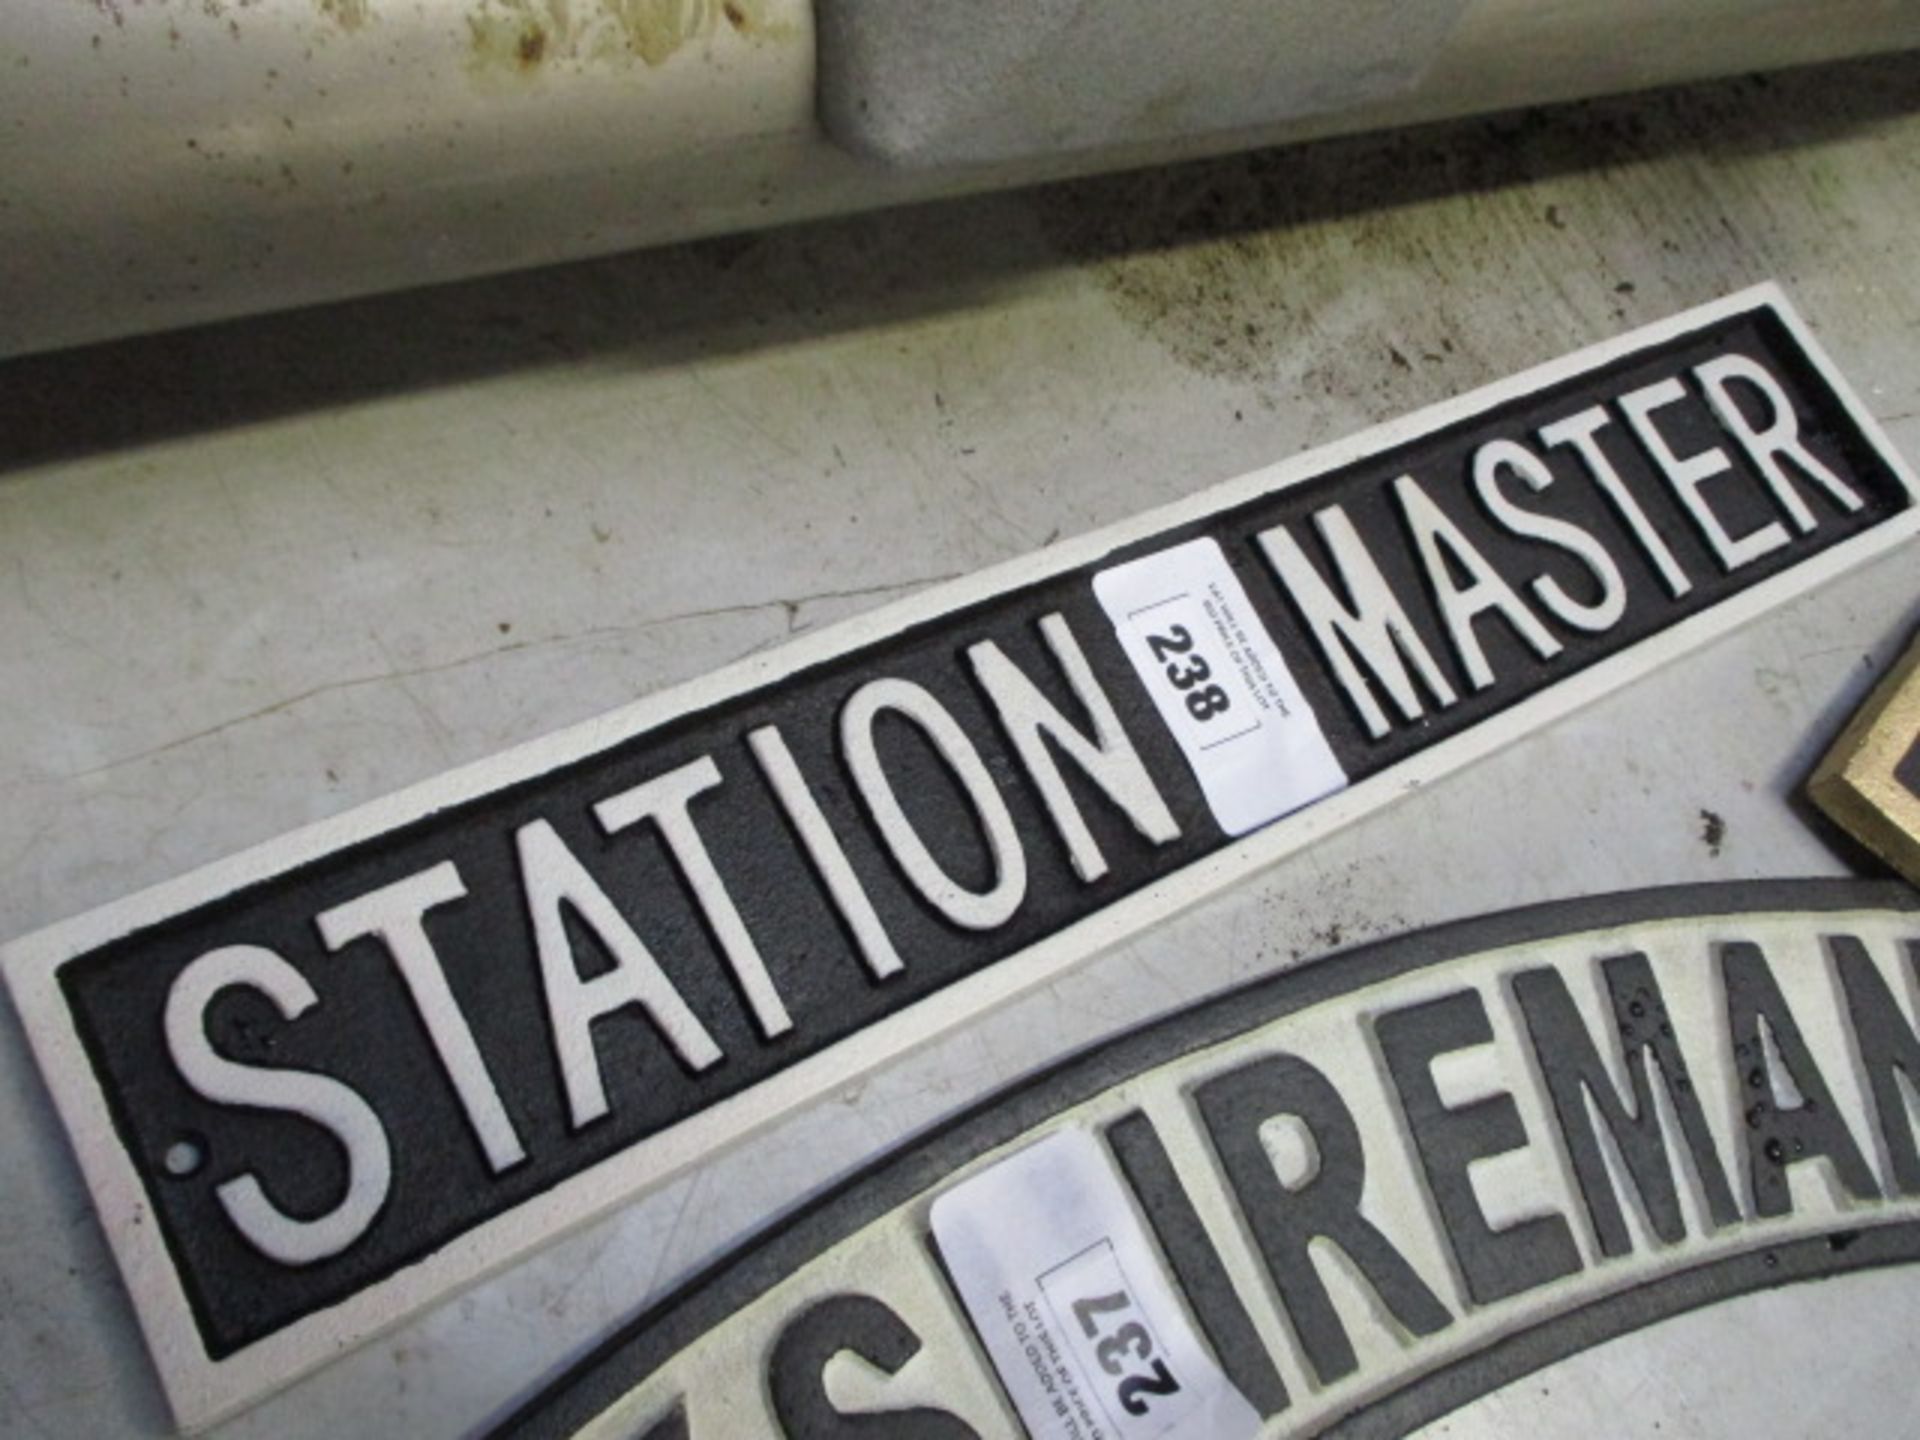 Station master cast sign (116)